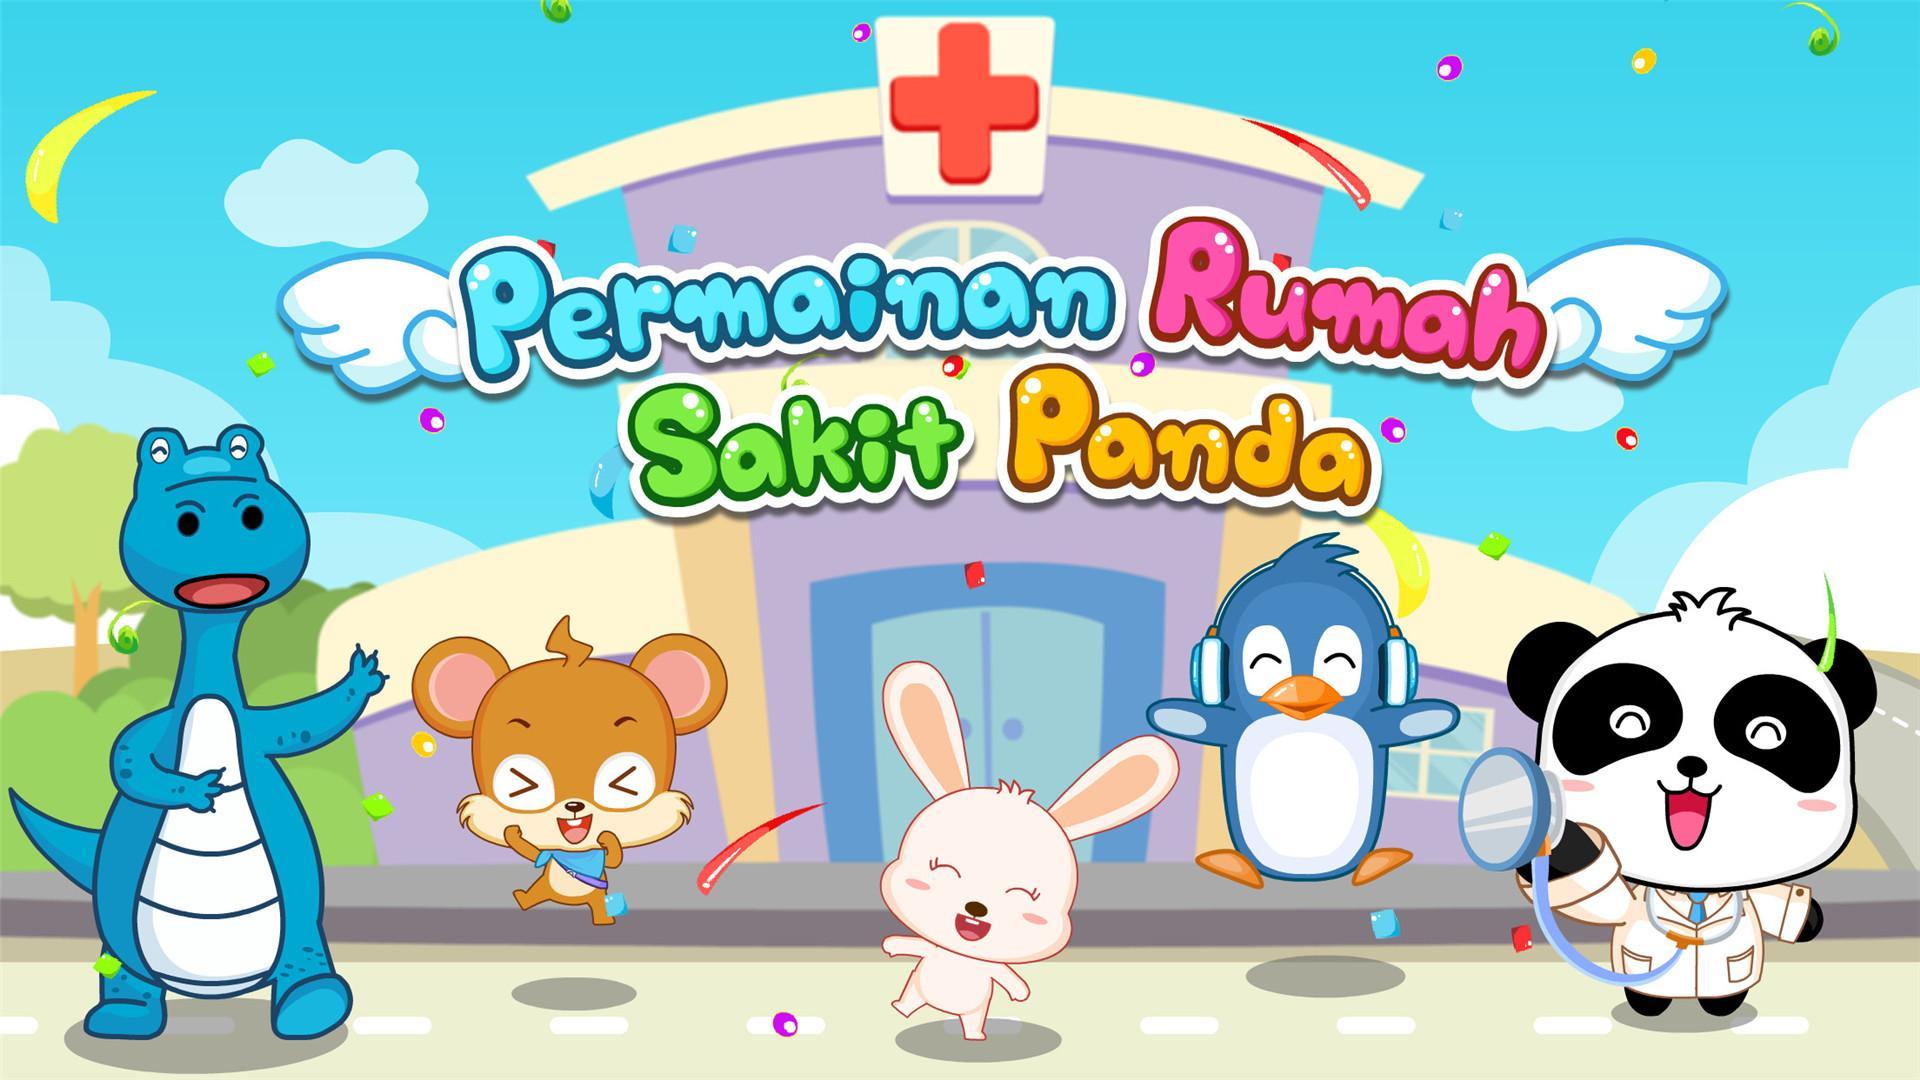 Rumah Sakit Panda Kecil for Android - APK Download